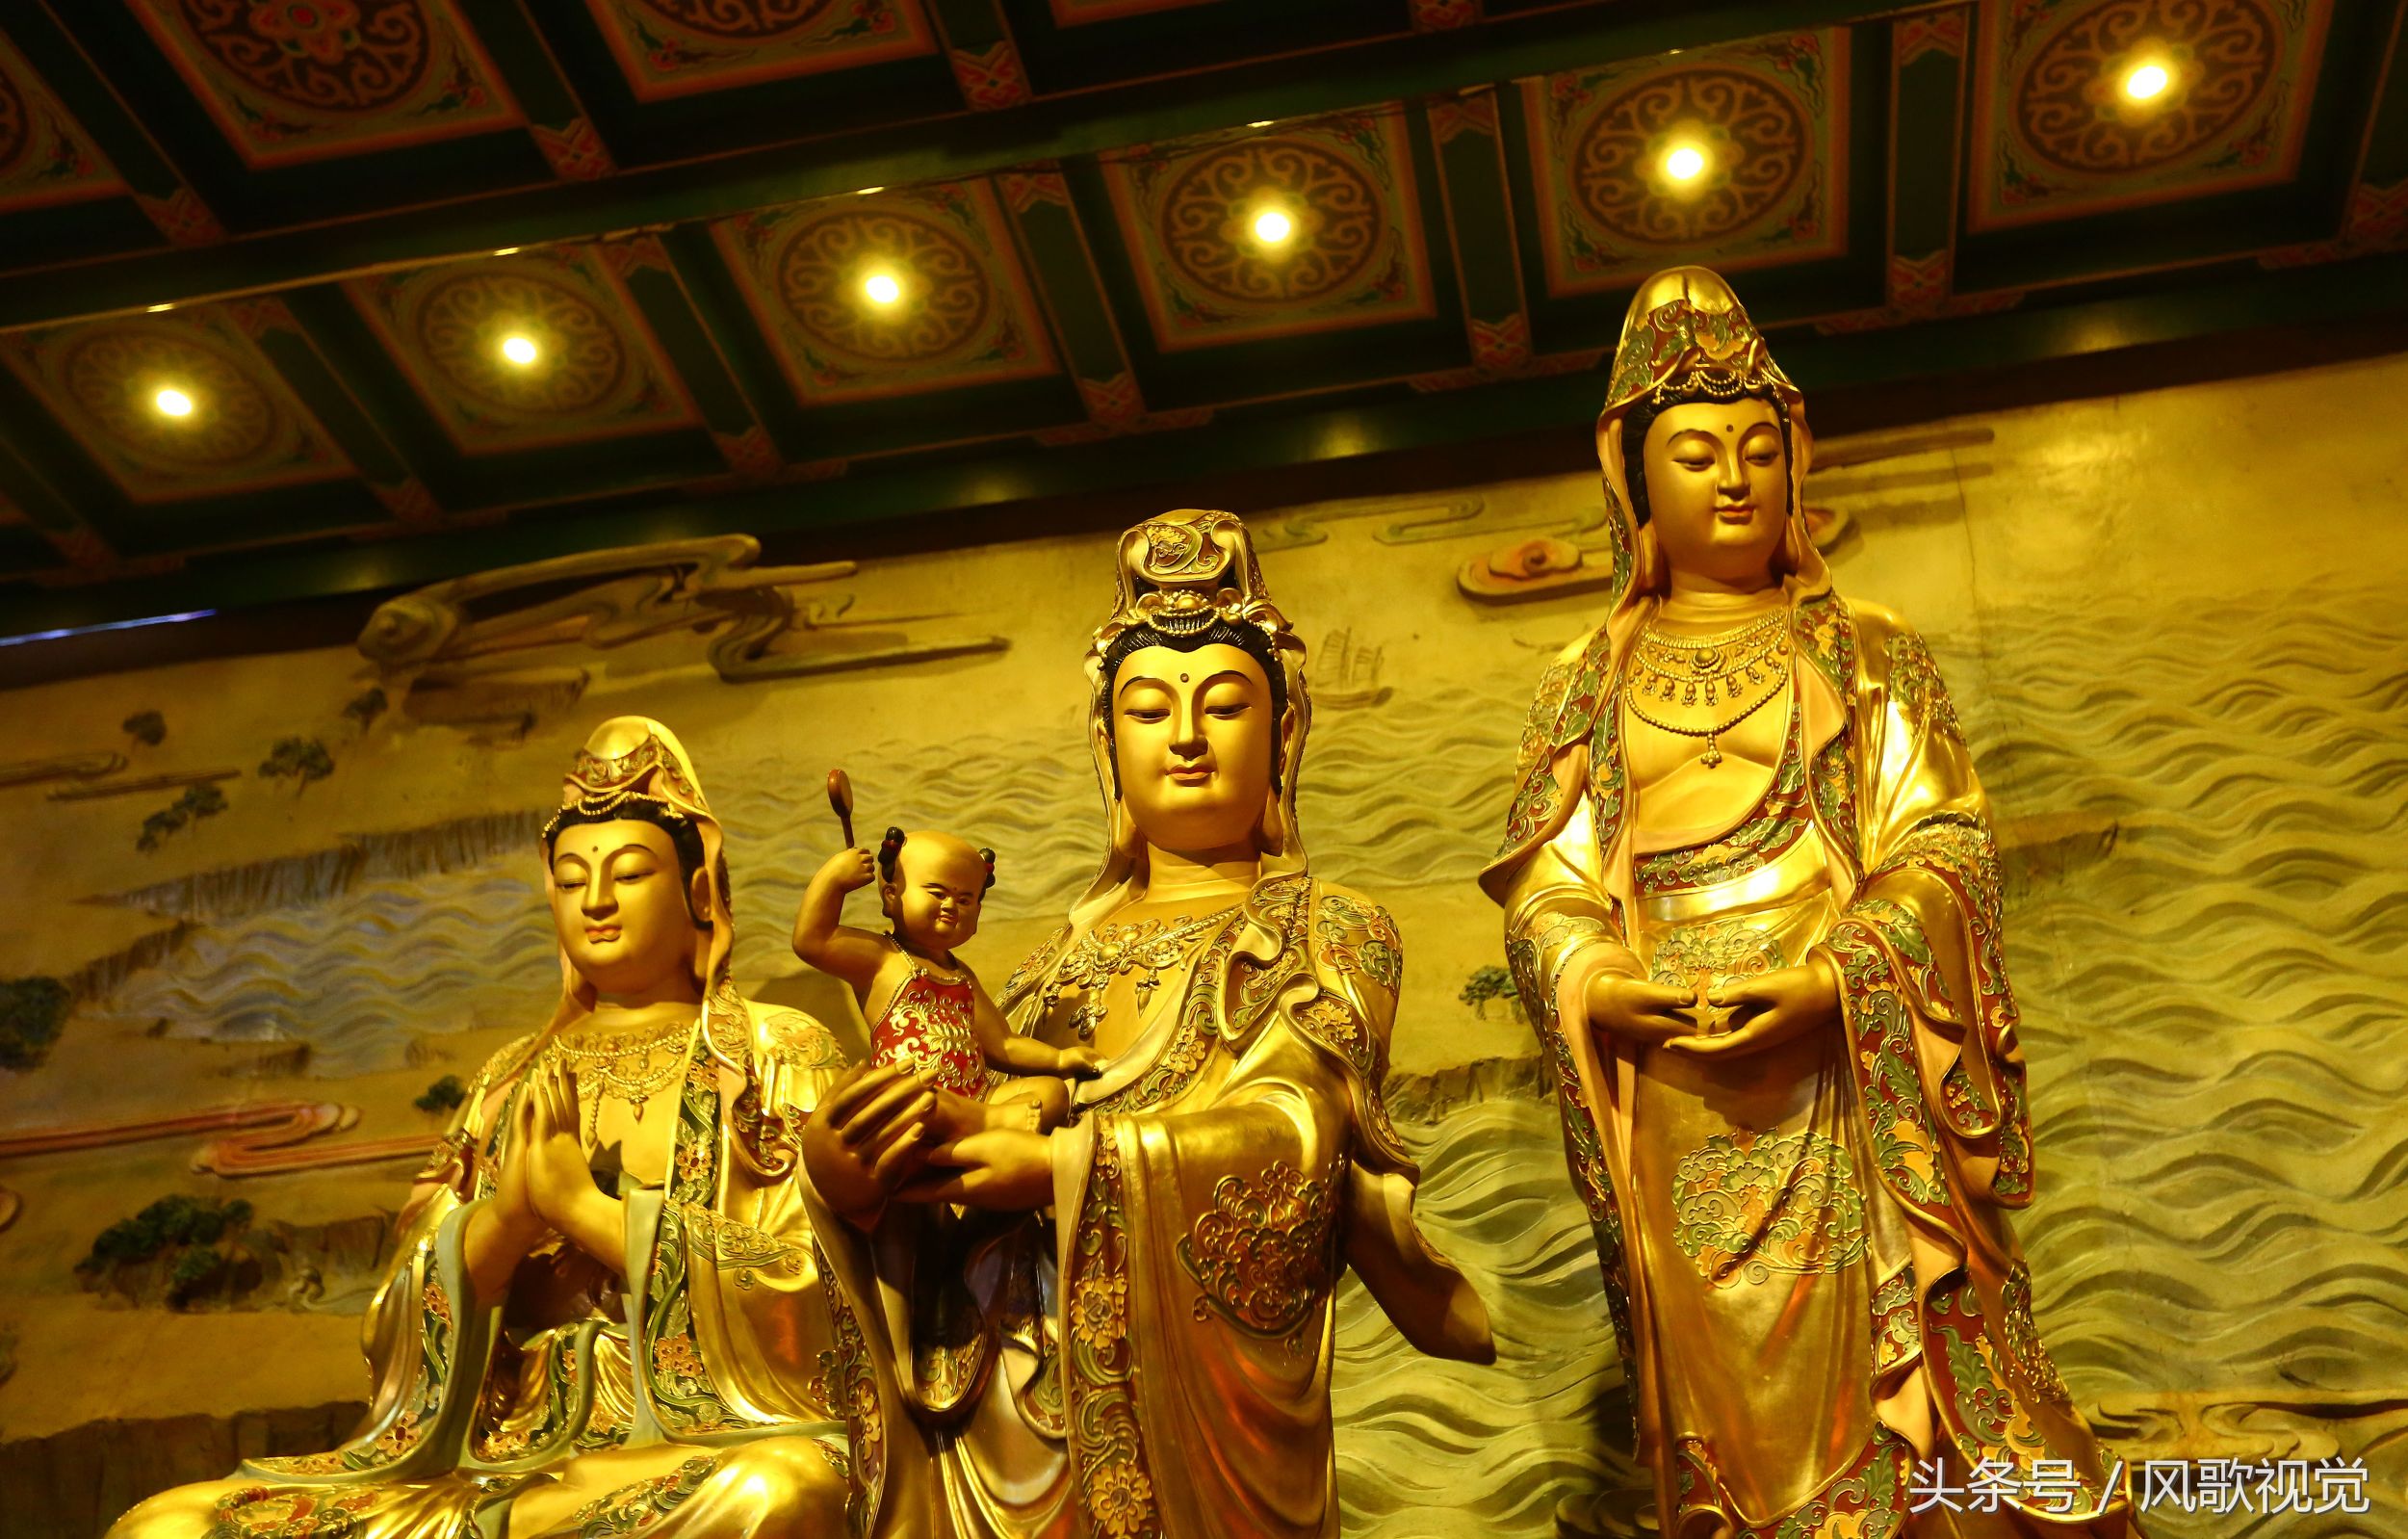 谁都知道南海观音但你可见过观音菩萨33种化身这是佛教传奇吗